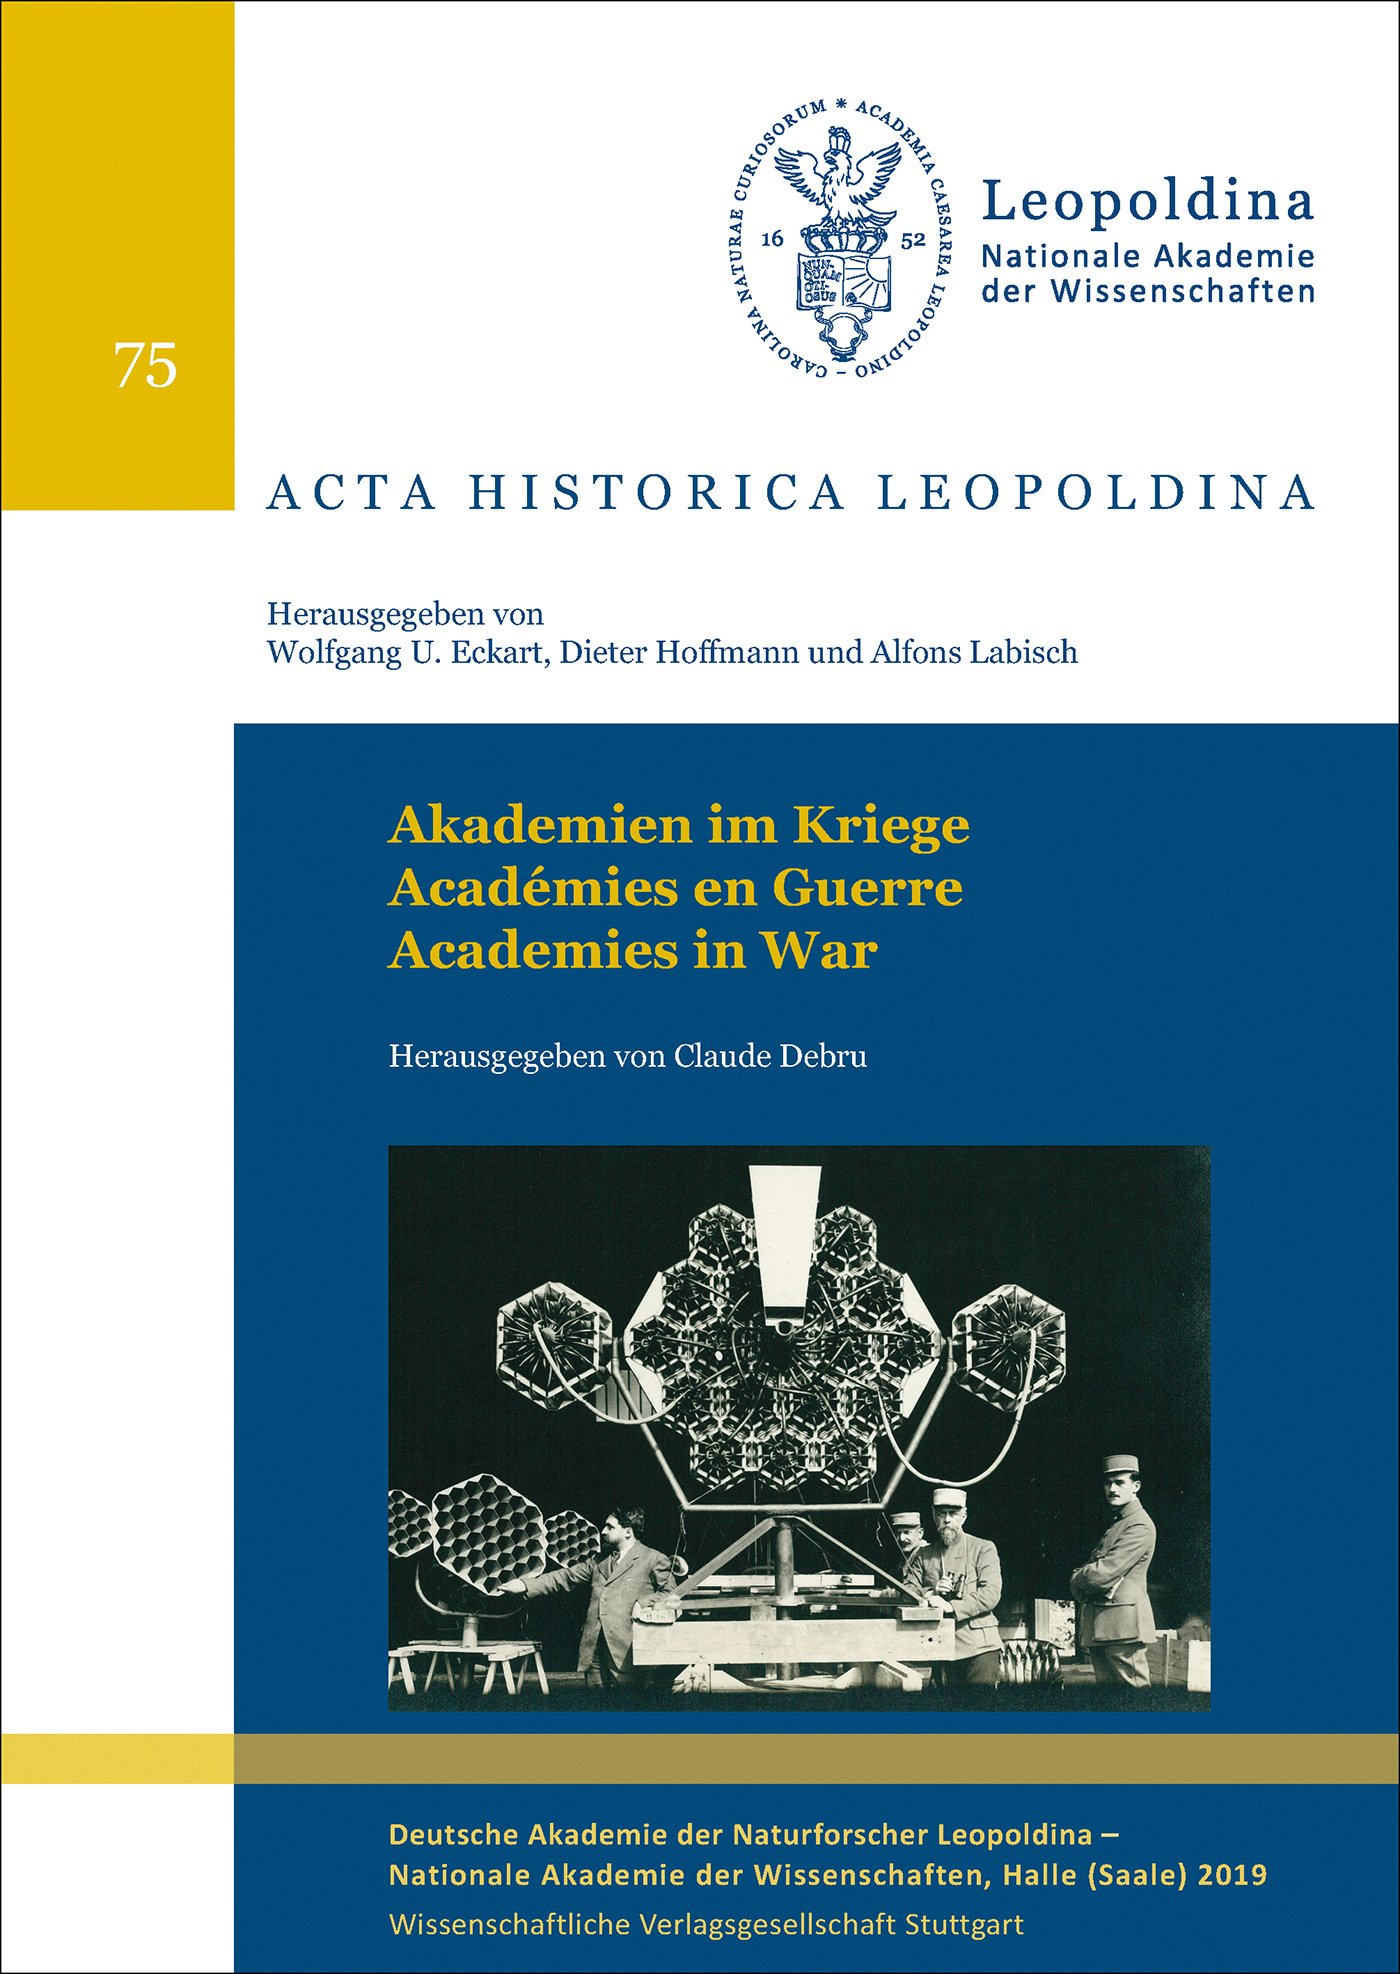 Akademien im Kriege - Académies en Guerre - Academies in War